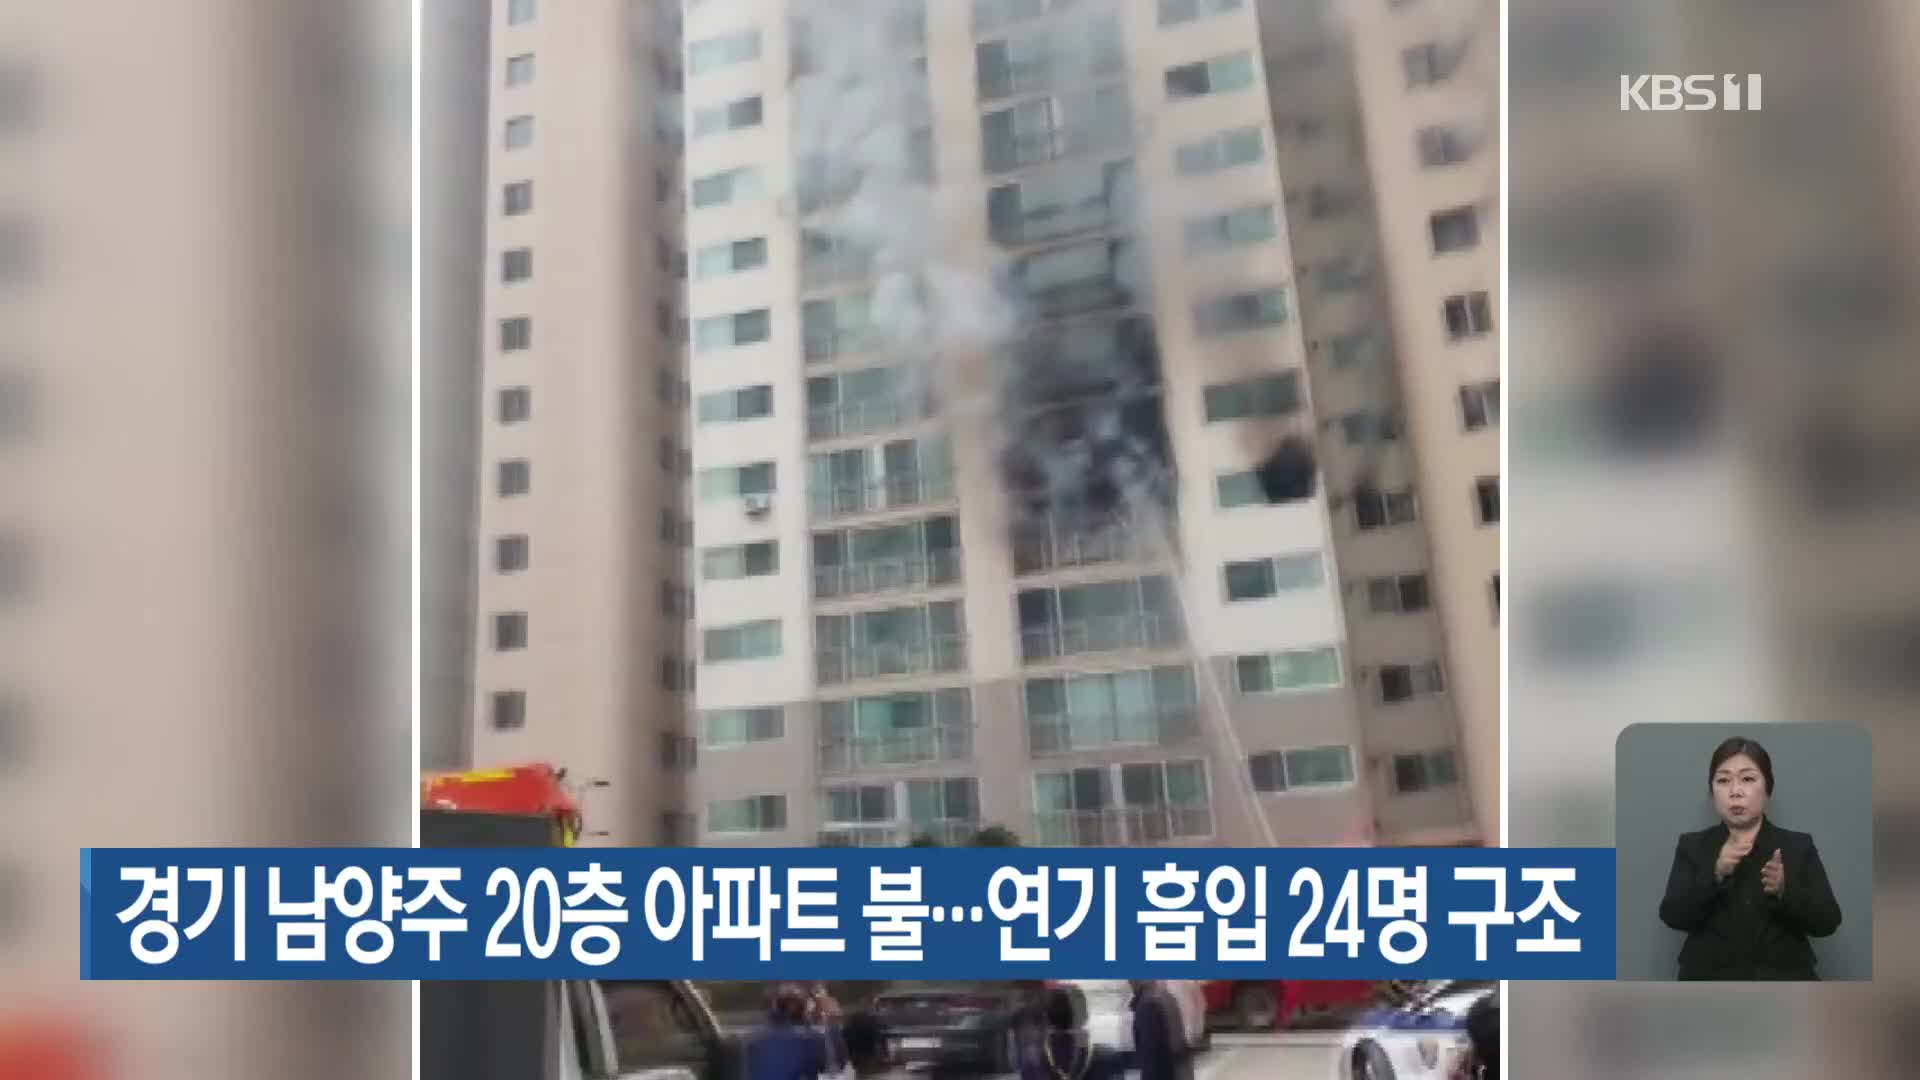 경기 남양주 20층 아파트 불…연기 흡입 24명 구조     